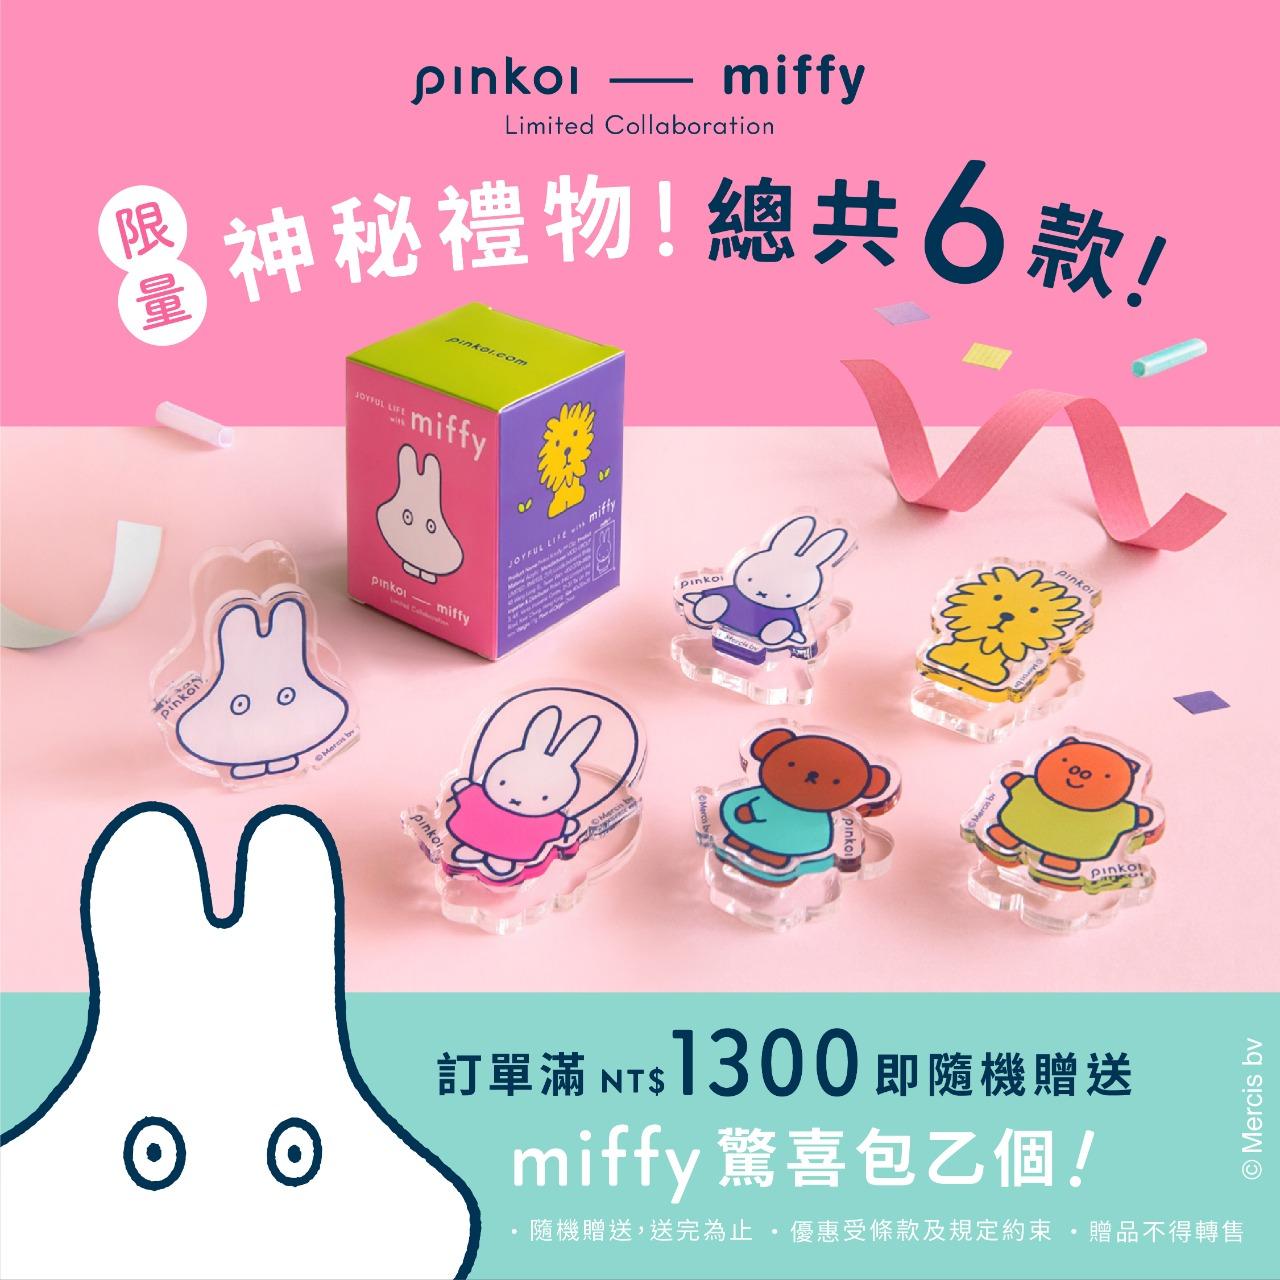 𝐏𝐢𝐧𝐤𝐨𝐢 𝐅𝐚𝐬𝐡𝐢𝐨𝐧 // 8/29 前，miffy 精選聯名設計館，滿 NT$1,300 免運，再送驚喜包！